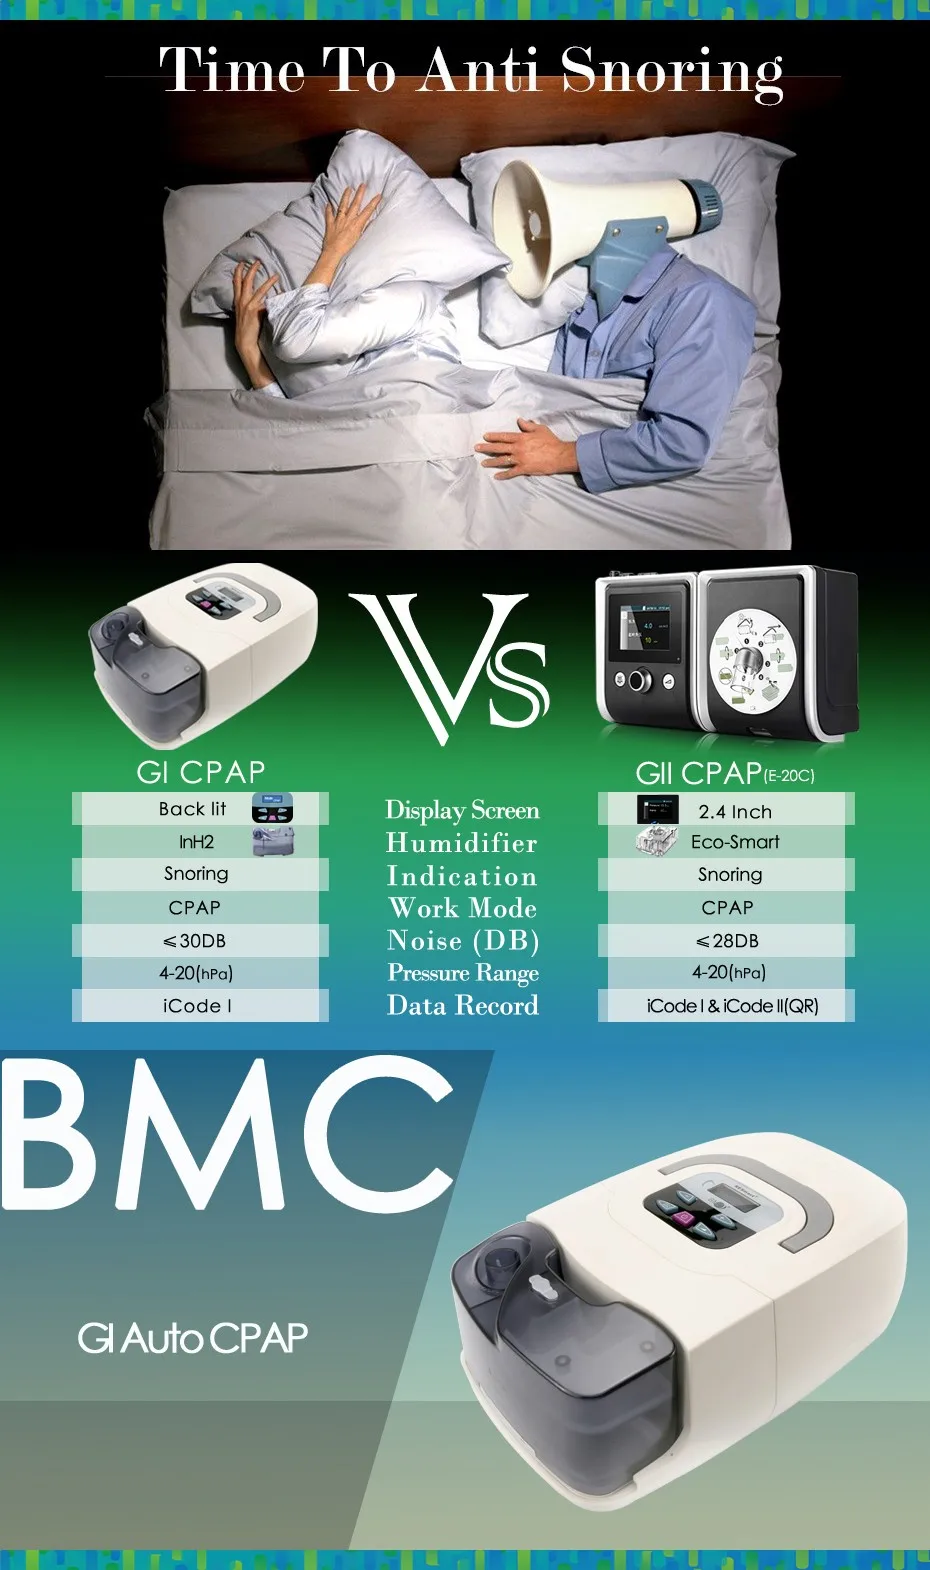 CE FDA медицинская портативная CPAP Машина респиратор для апноэ сна OSAS храп людей COPD с бесплатной маской головной убор трубка сумка